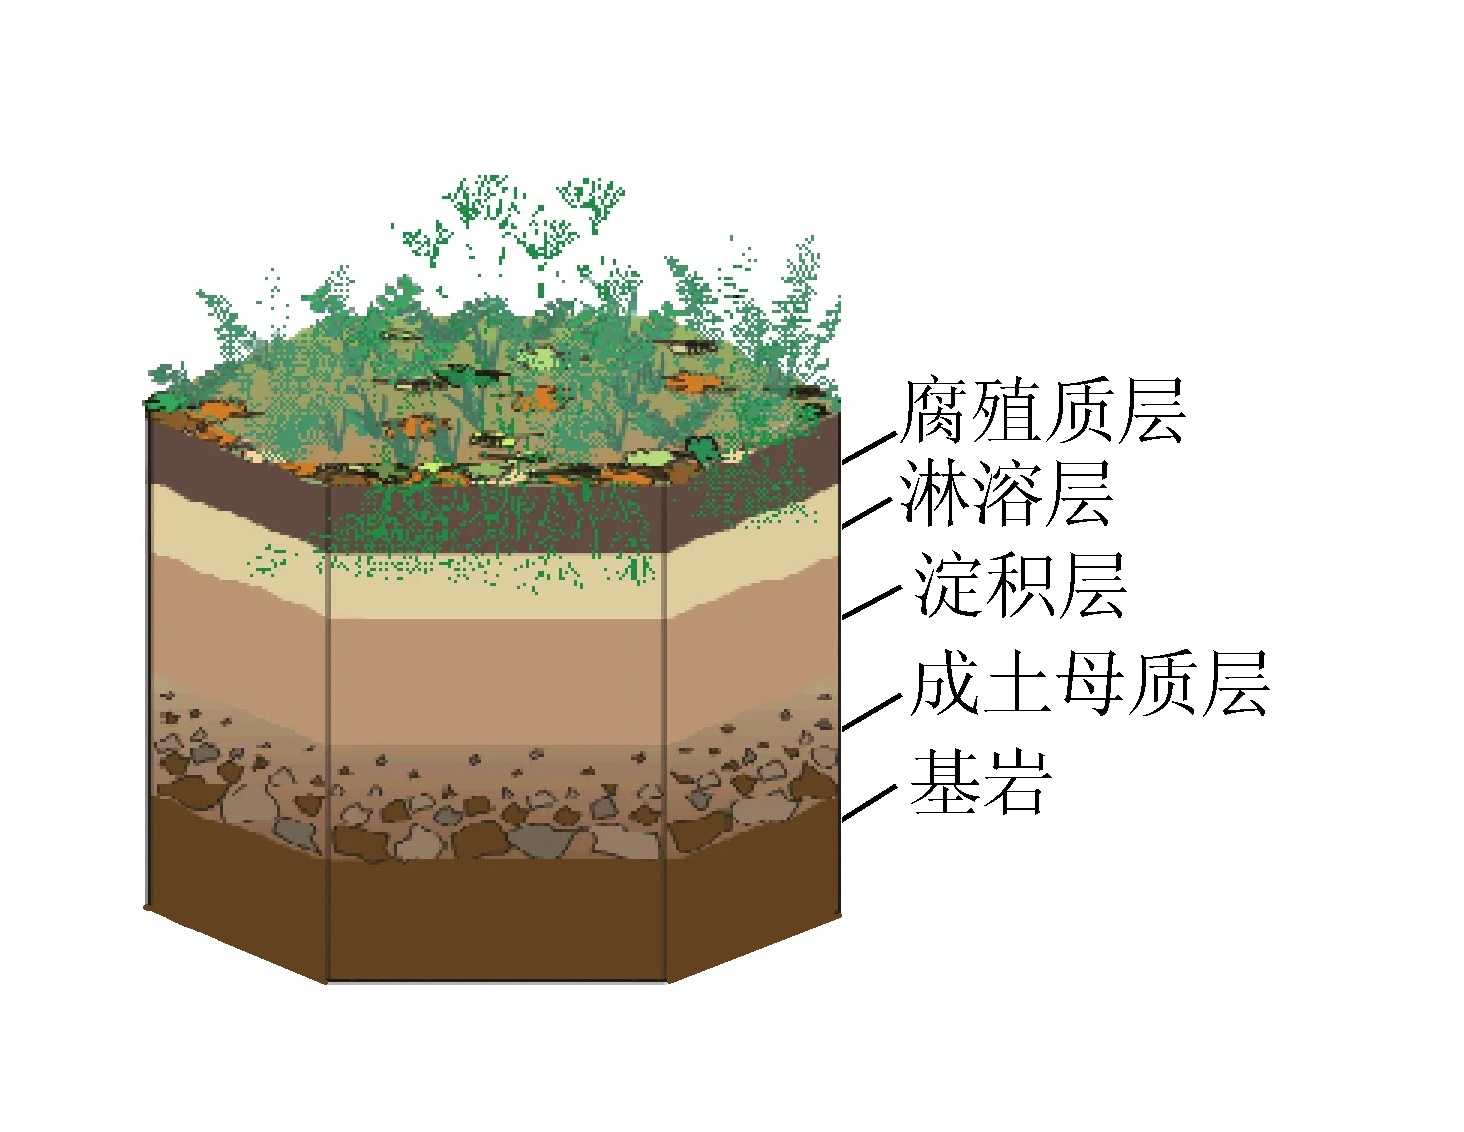 下图为成熟土壤剖面示意图读图据此完成下面小题